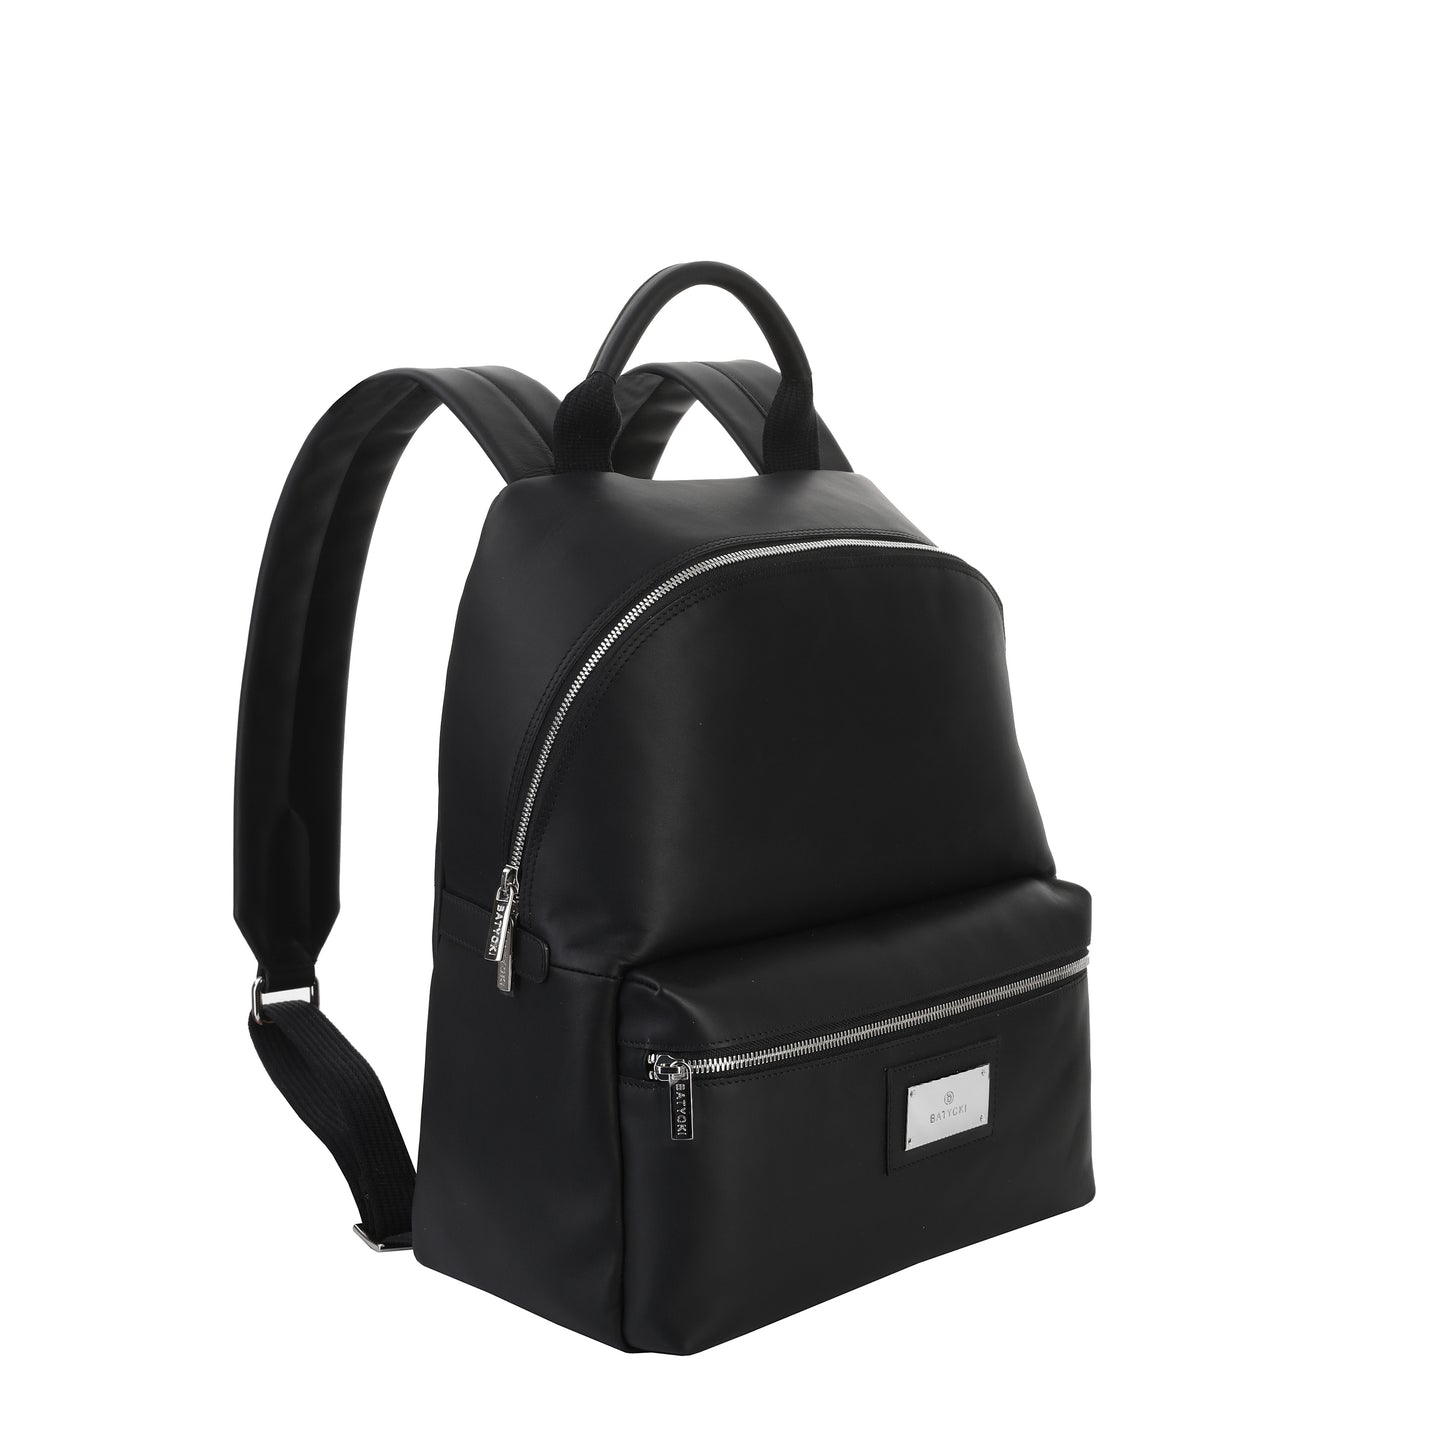 Men's napa leather backpack, black